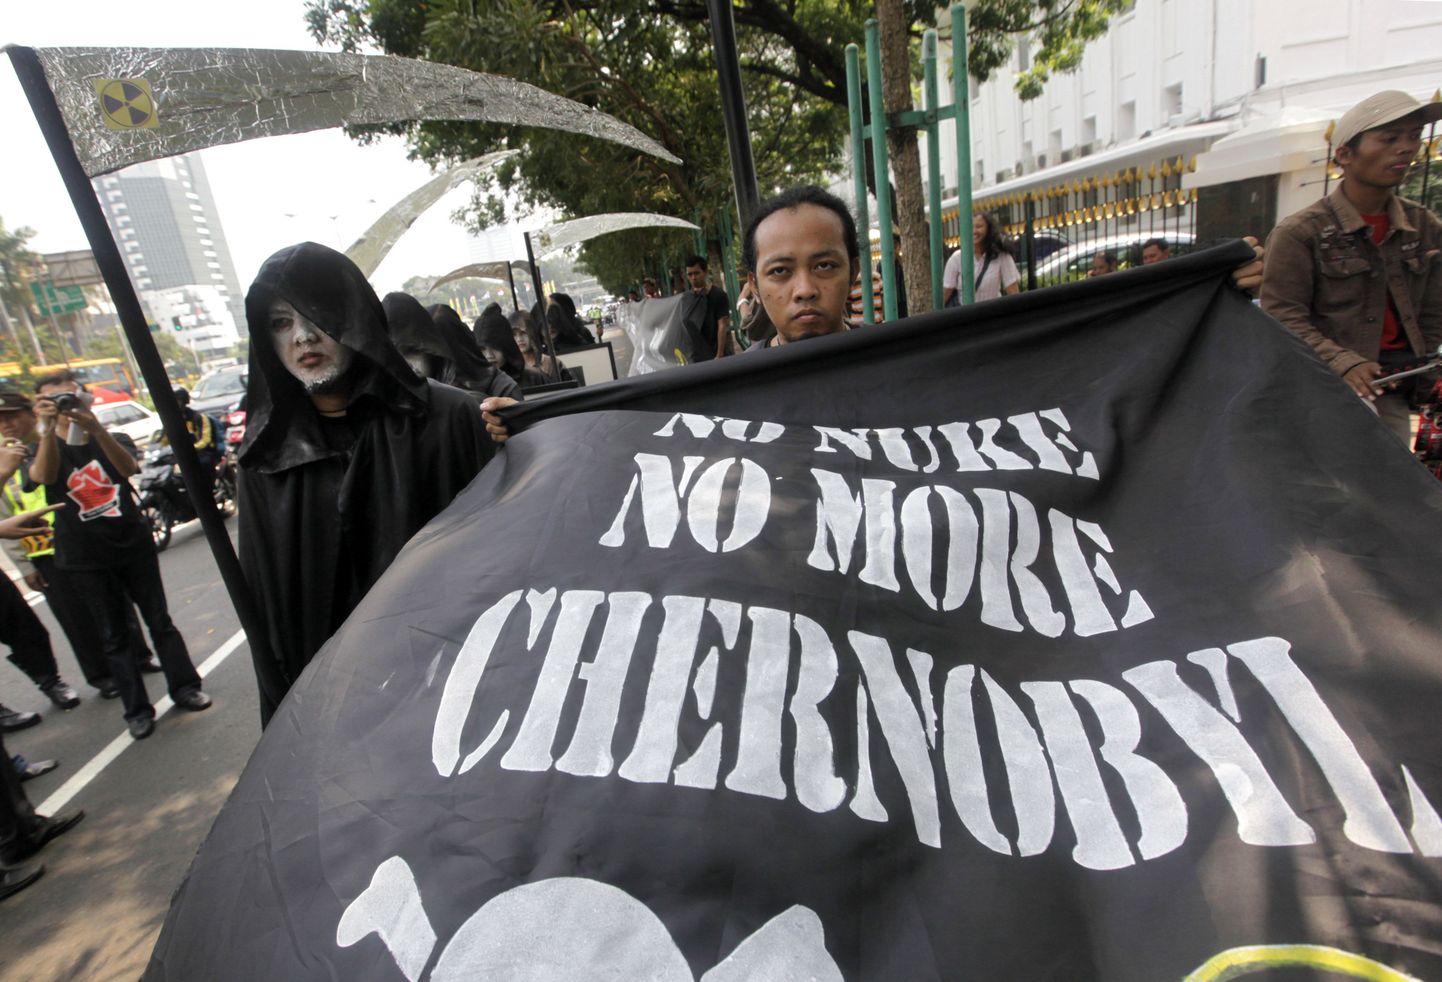 24 апреля 2010 года. Индонезия. Активисты движения за чистоту окружающей среды на митинге против использования атомной энерги. На баннере: "Нет атомной энергии. Не нужно больше Чернобыля".